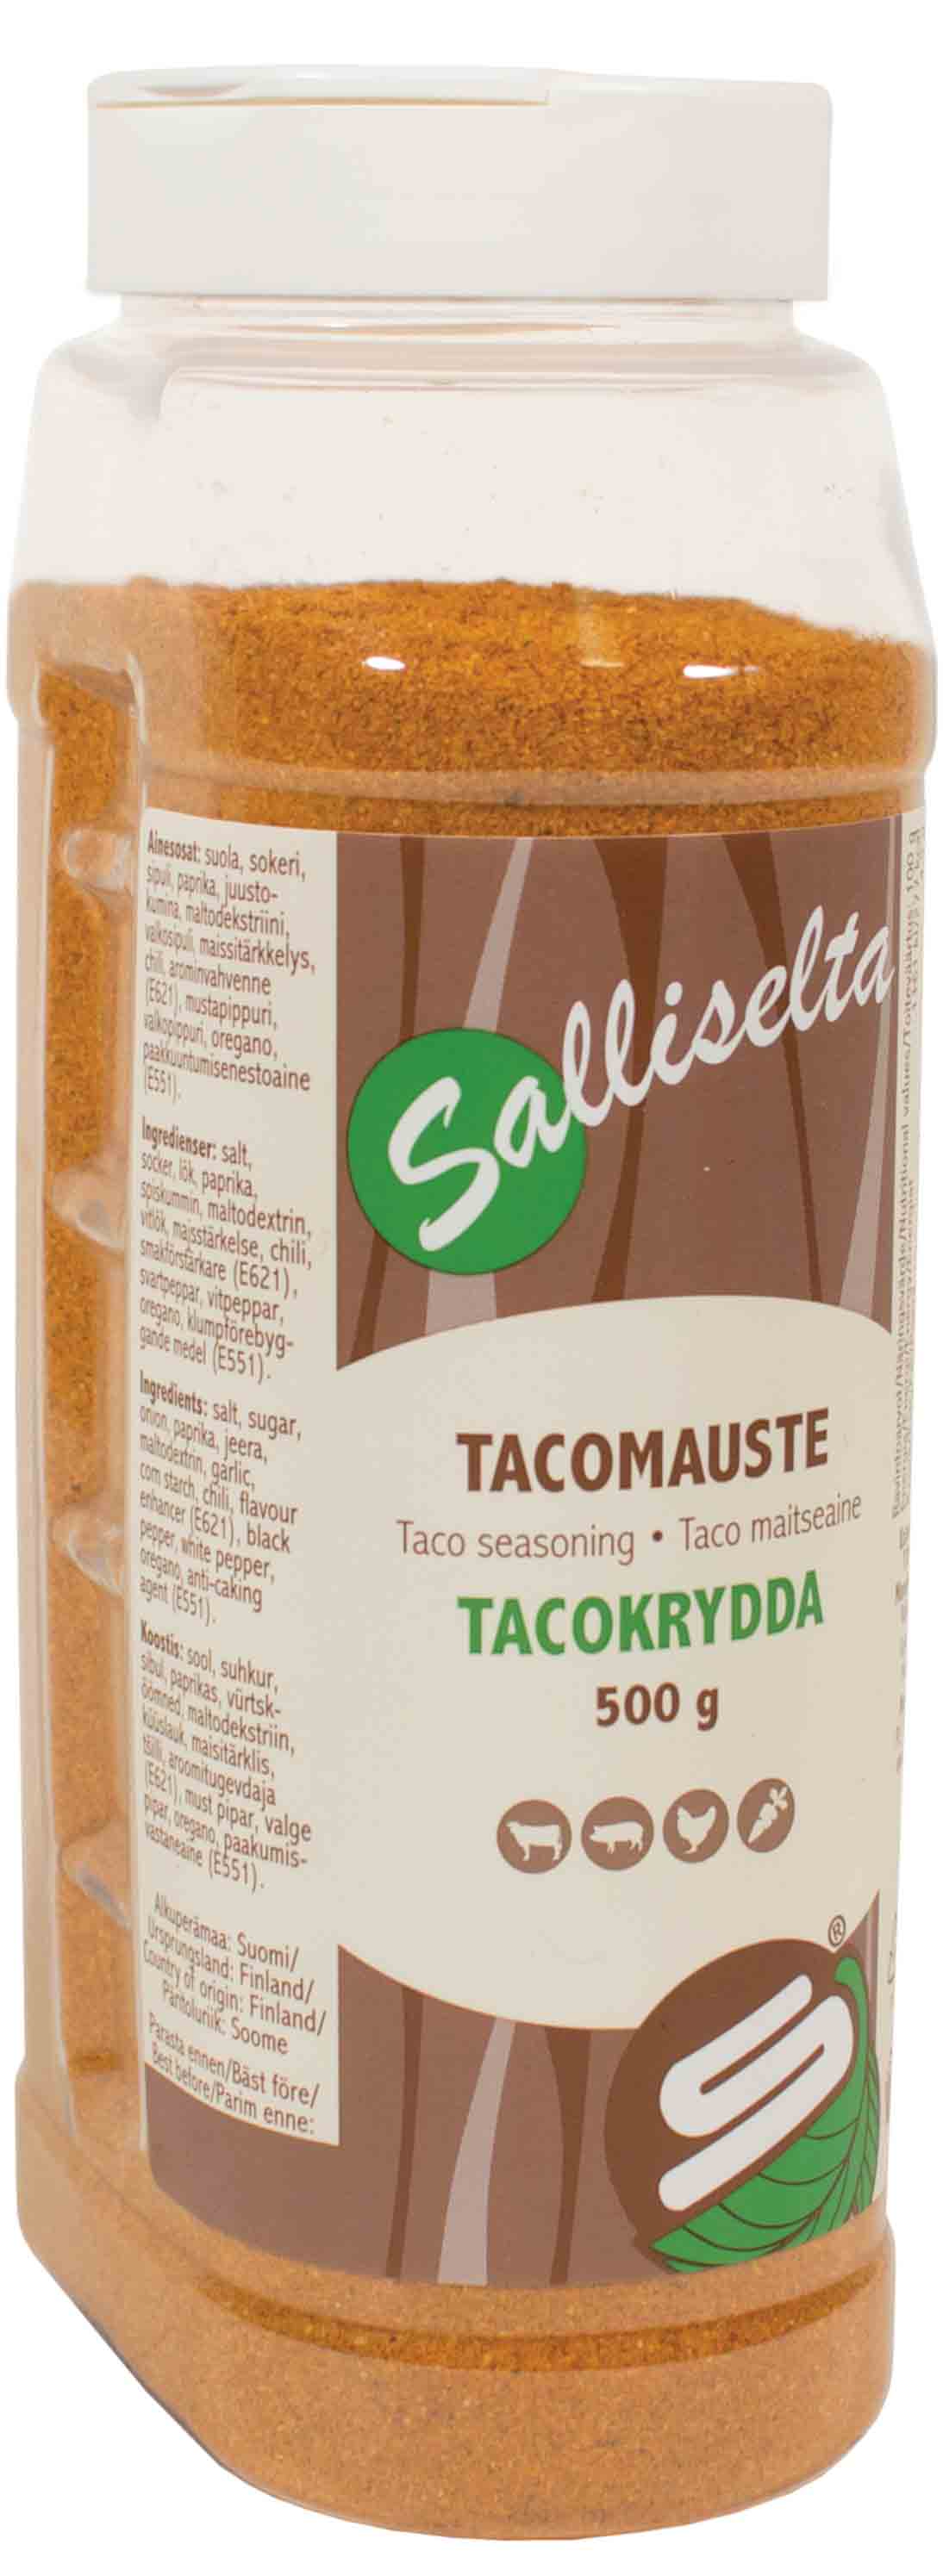 Taco mausteseos 500g